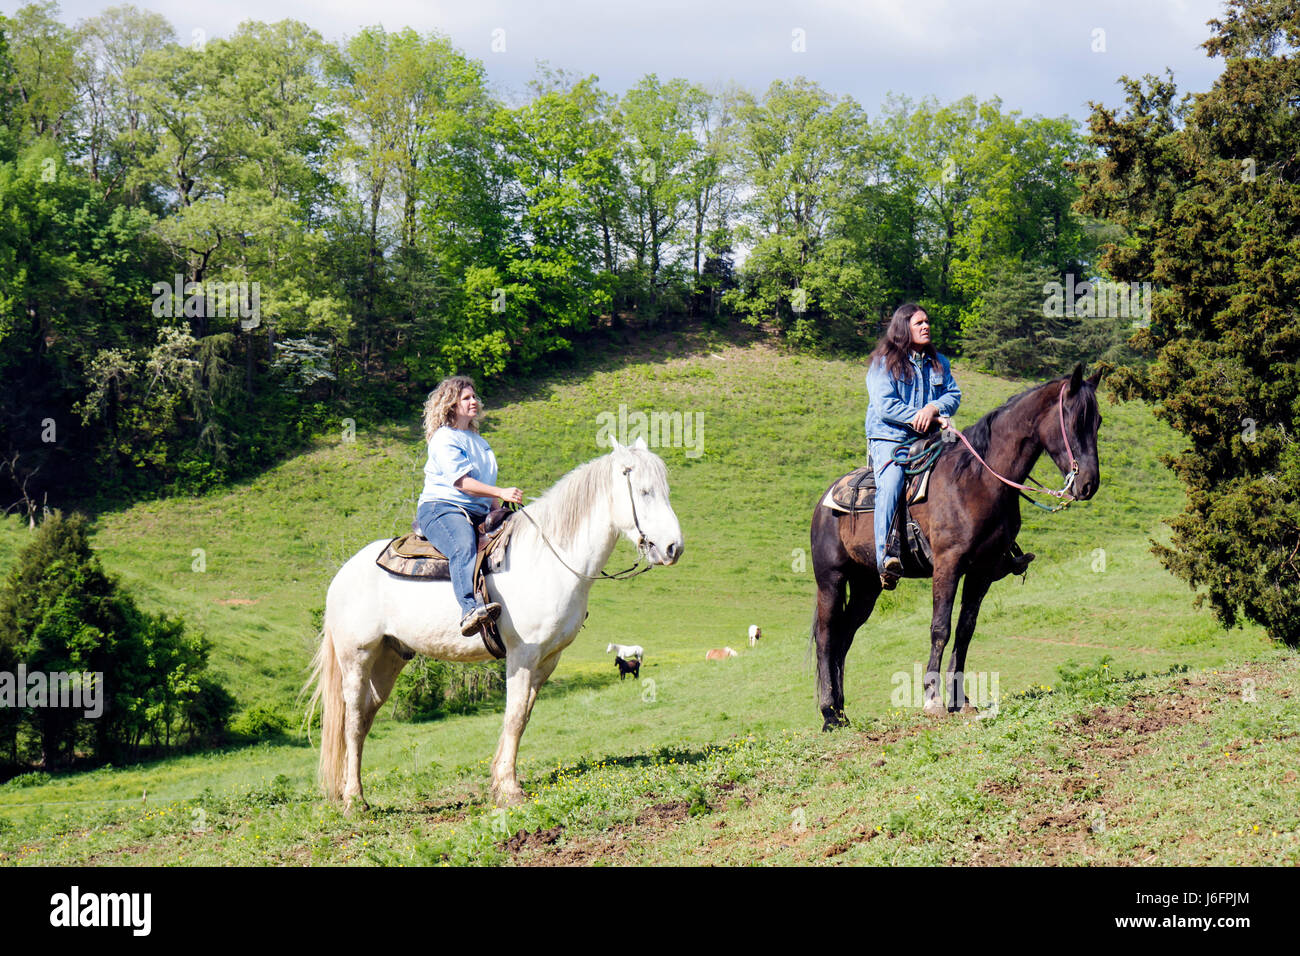 Sevierville Tennessee,Smoky Mountains,Five Oaks Riding stables,équitation,femme femme femme,Native American,homme,guide de sentier,cheval,animal,est Banque D'Images